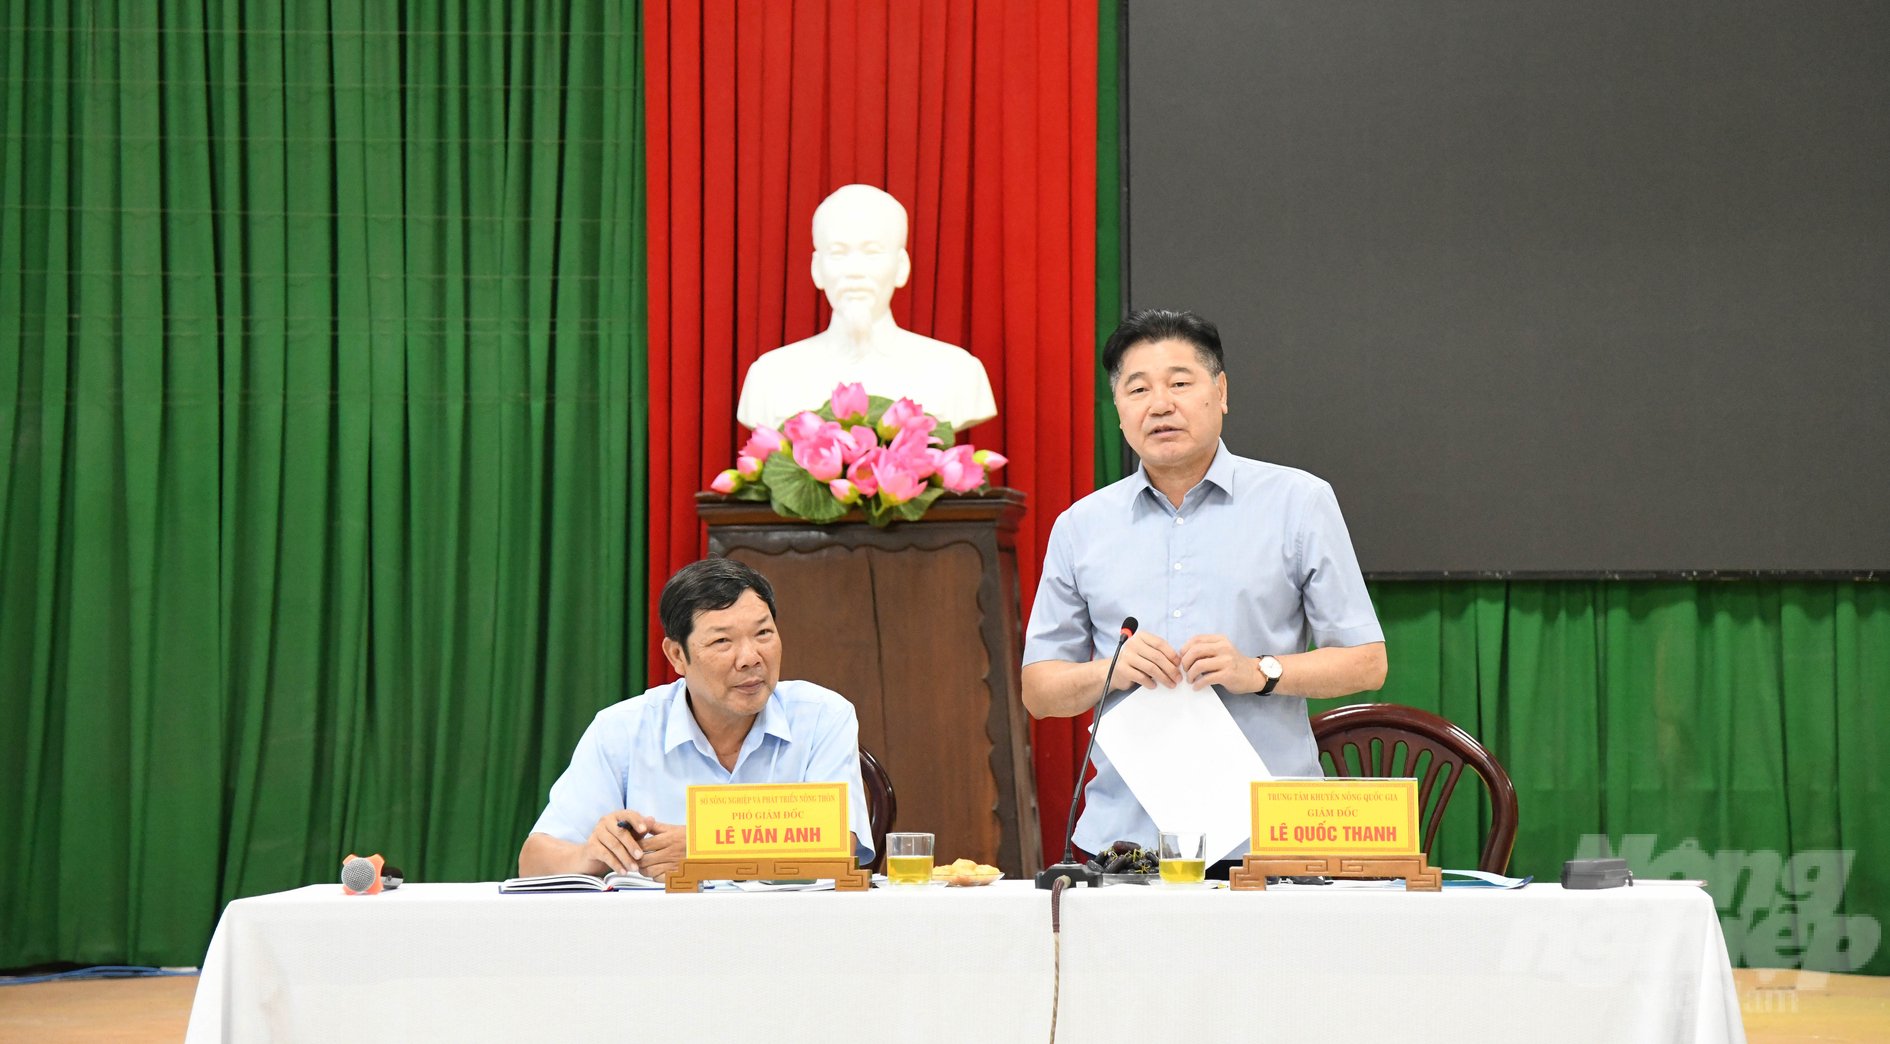 Ông Lê Quốc Thanh (phải), Giám đốc Trung tâm Khuyến nông Quốc gia làm việc với Sở NN-PTNT Thừa Thiên Huế. Ảnh: Công Điền.